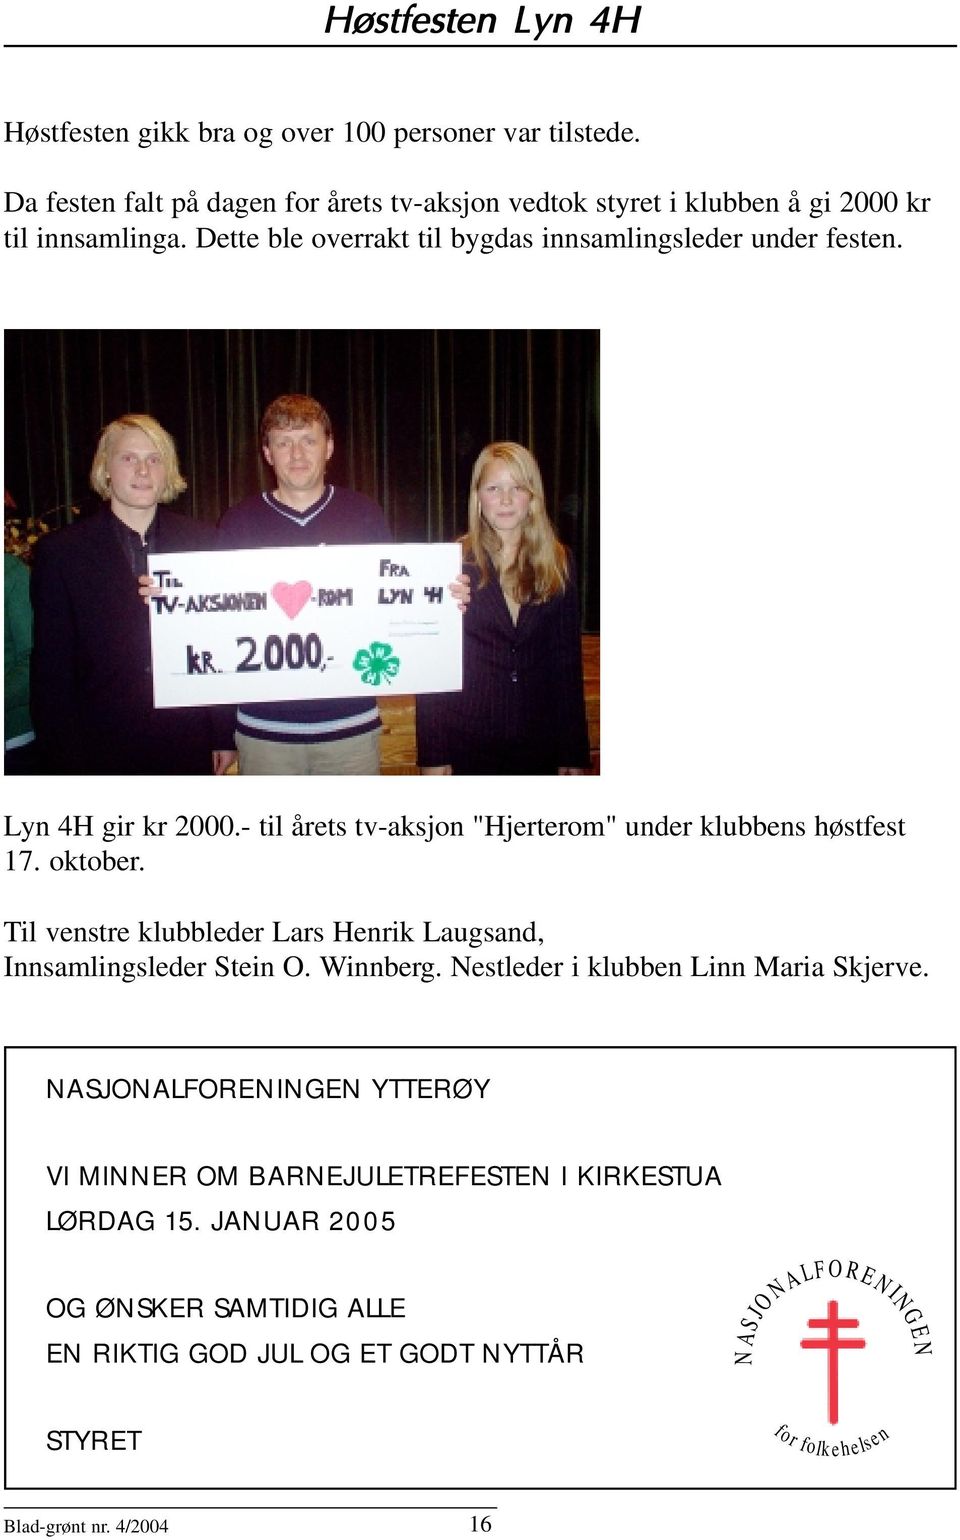 Til venstre klubbleder Lars Henrik Laugsand, Innsamlingsleder Stein O. Winnberg. Nestleder i klubben Linn Maria Skjerve.